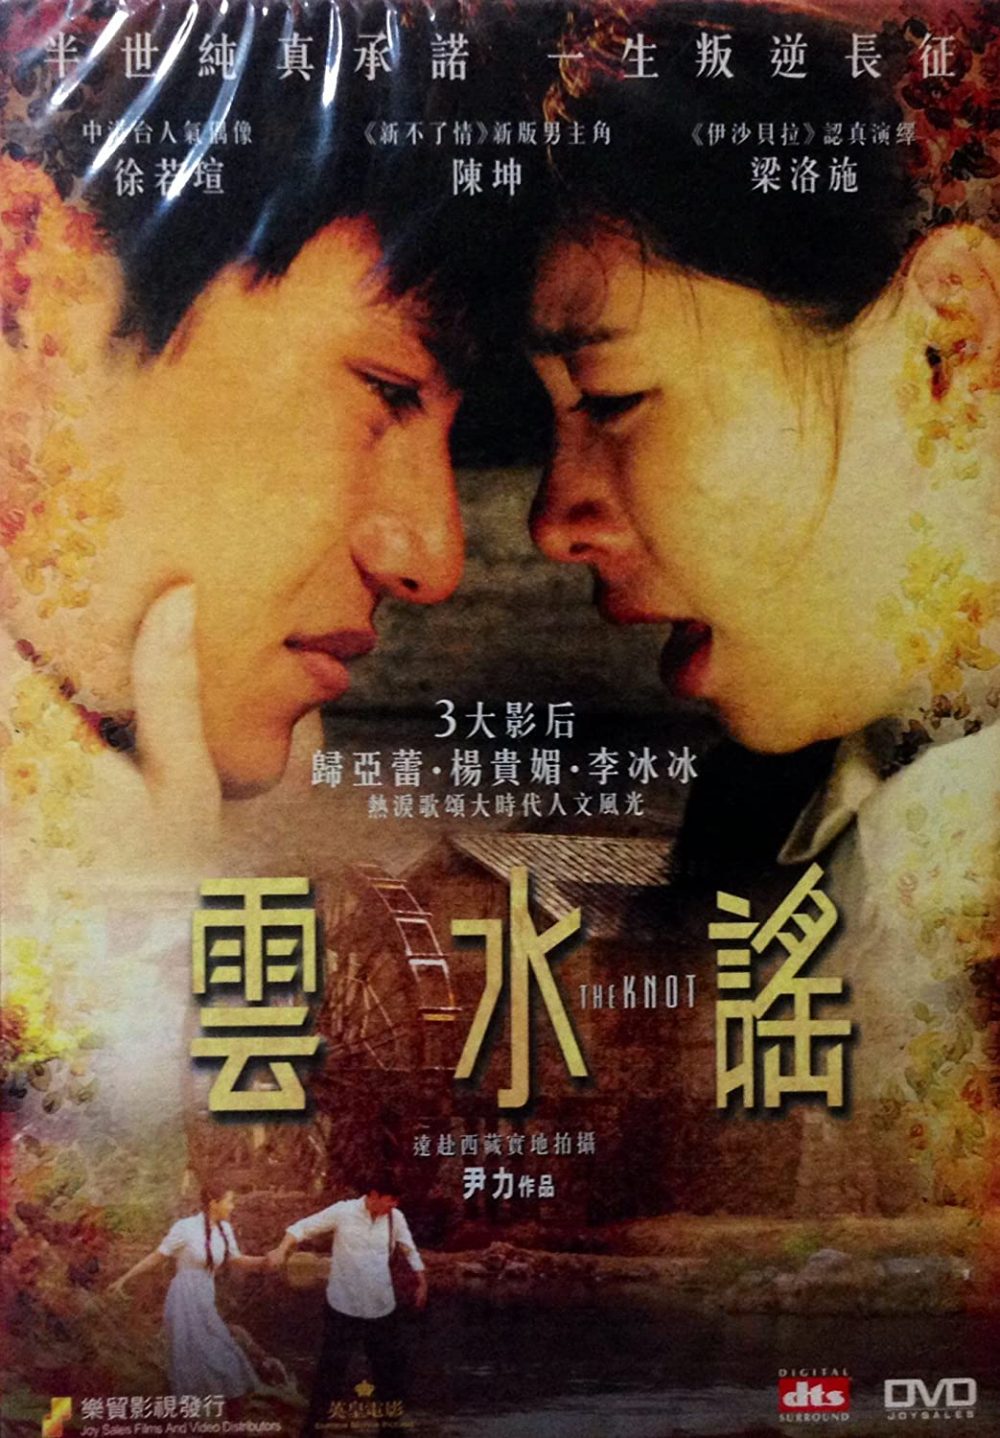 Phim do Từ Nhược Tuyên đóng: Vân Thủy Dao - The Knot (2006)